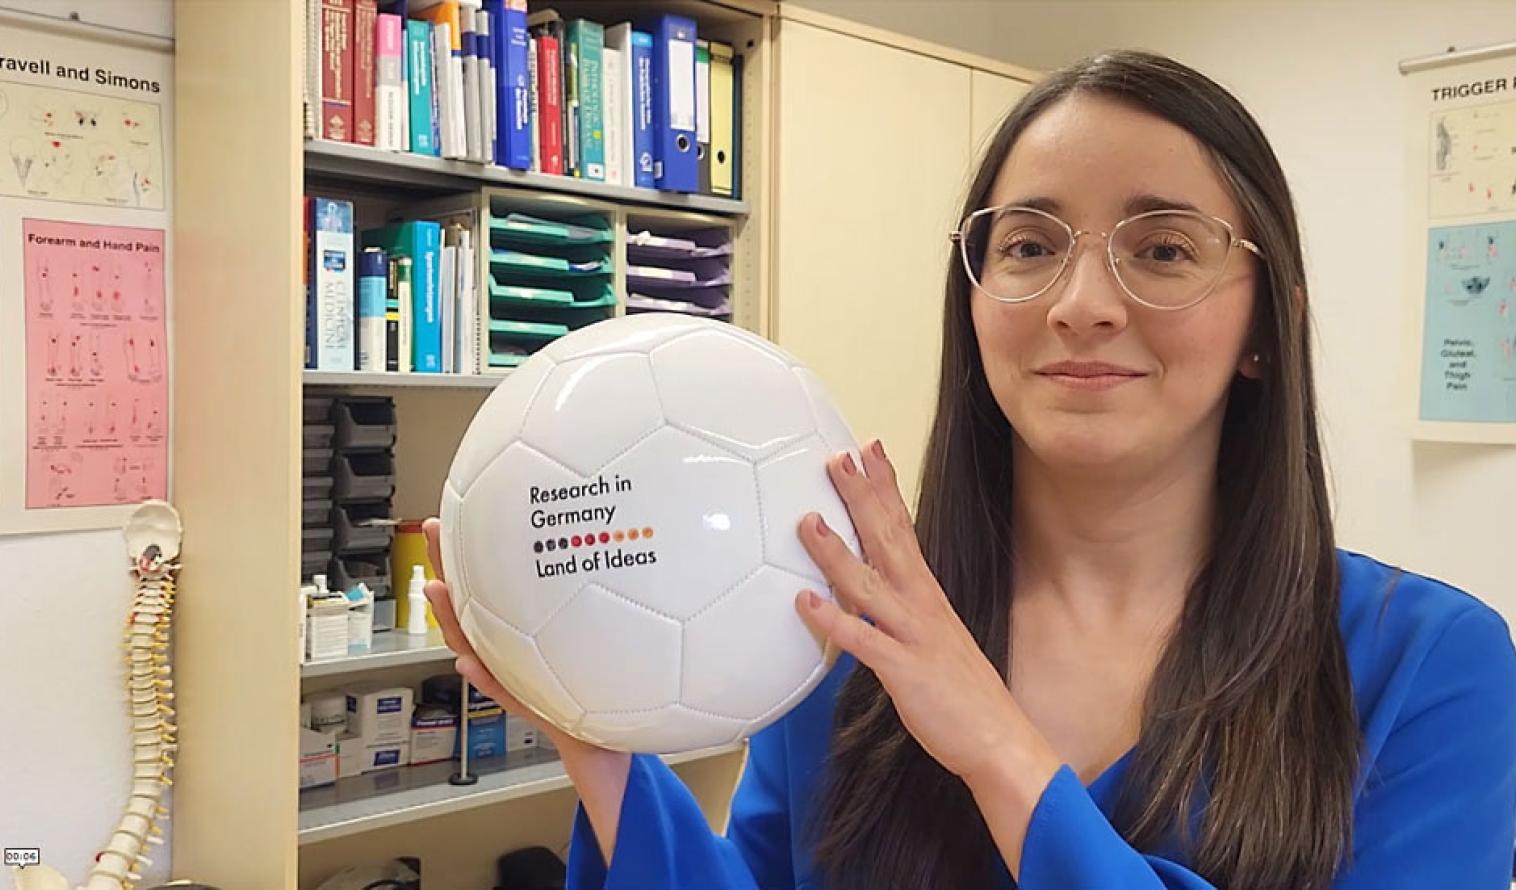 Wissenschaftlerin Monica Duarte Muñoz hält einen Fussball mit der Aufschrift Research in Germany Land of ideas in der Hand.